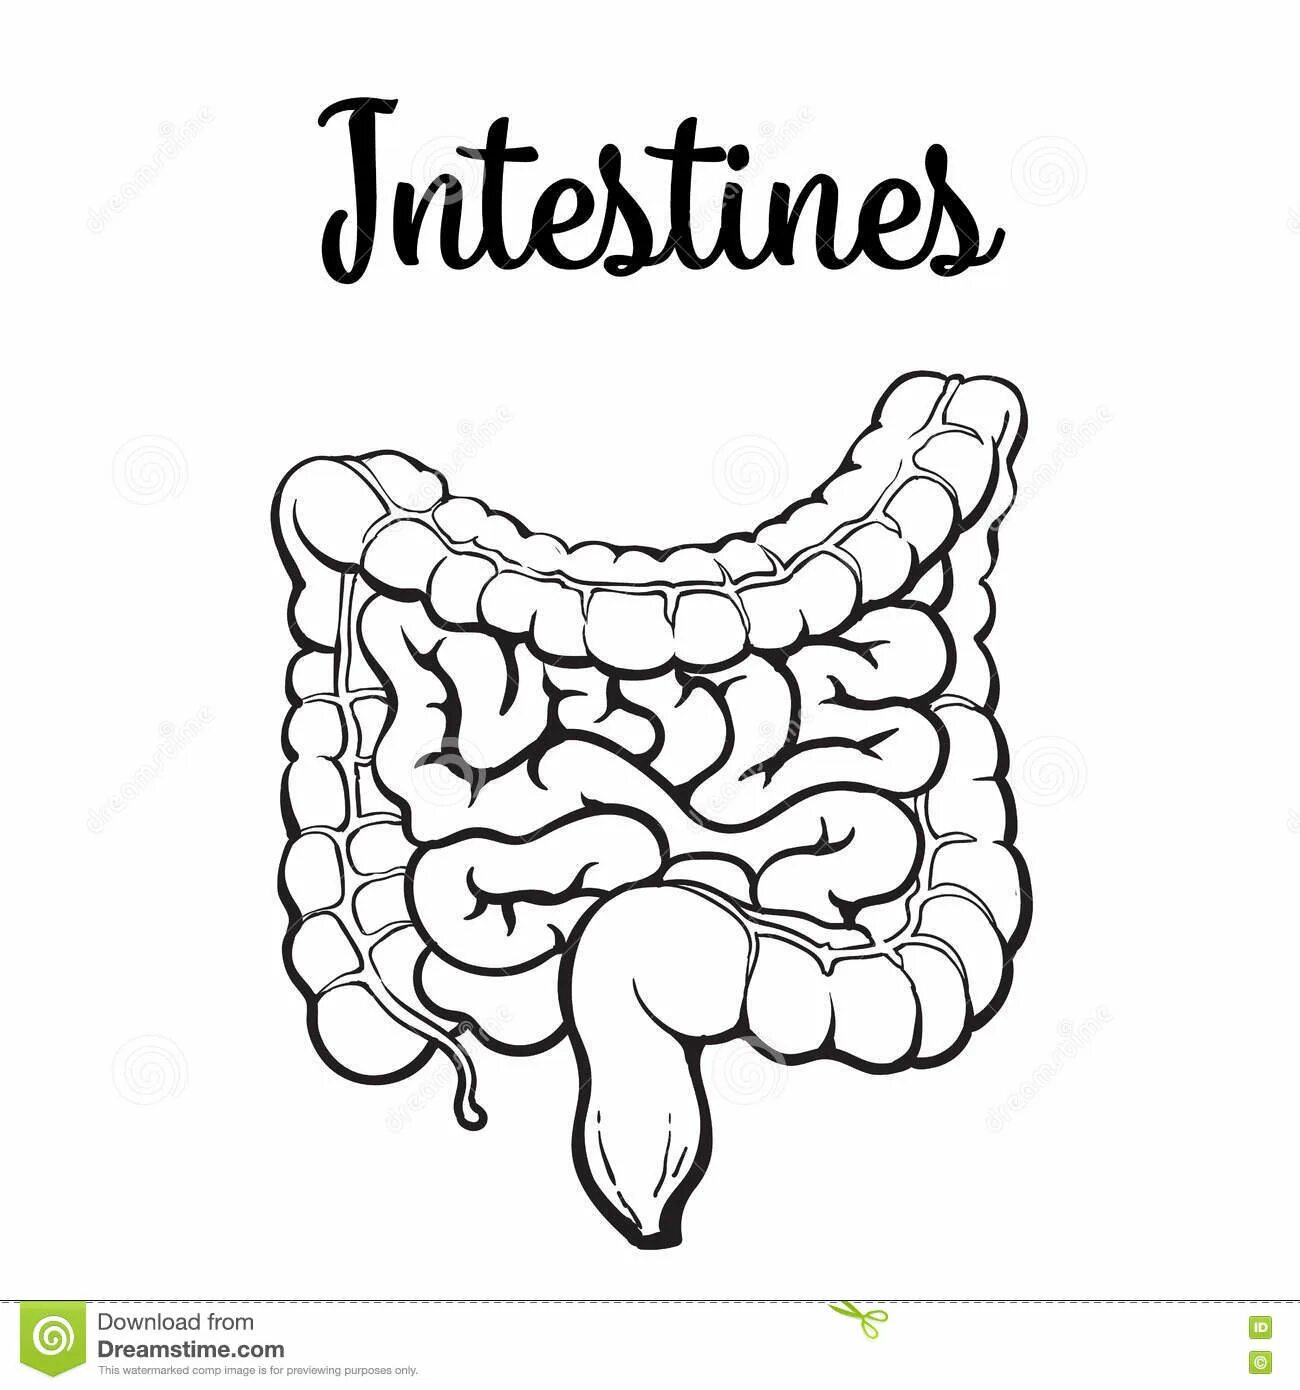 Human intestine #1